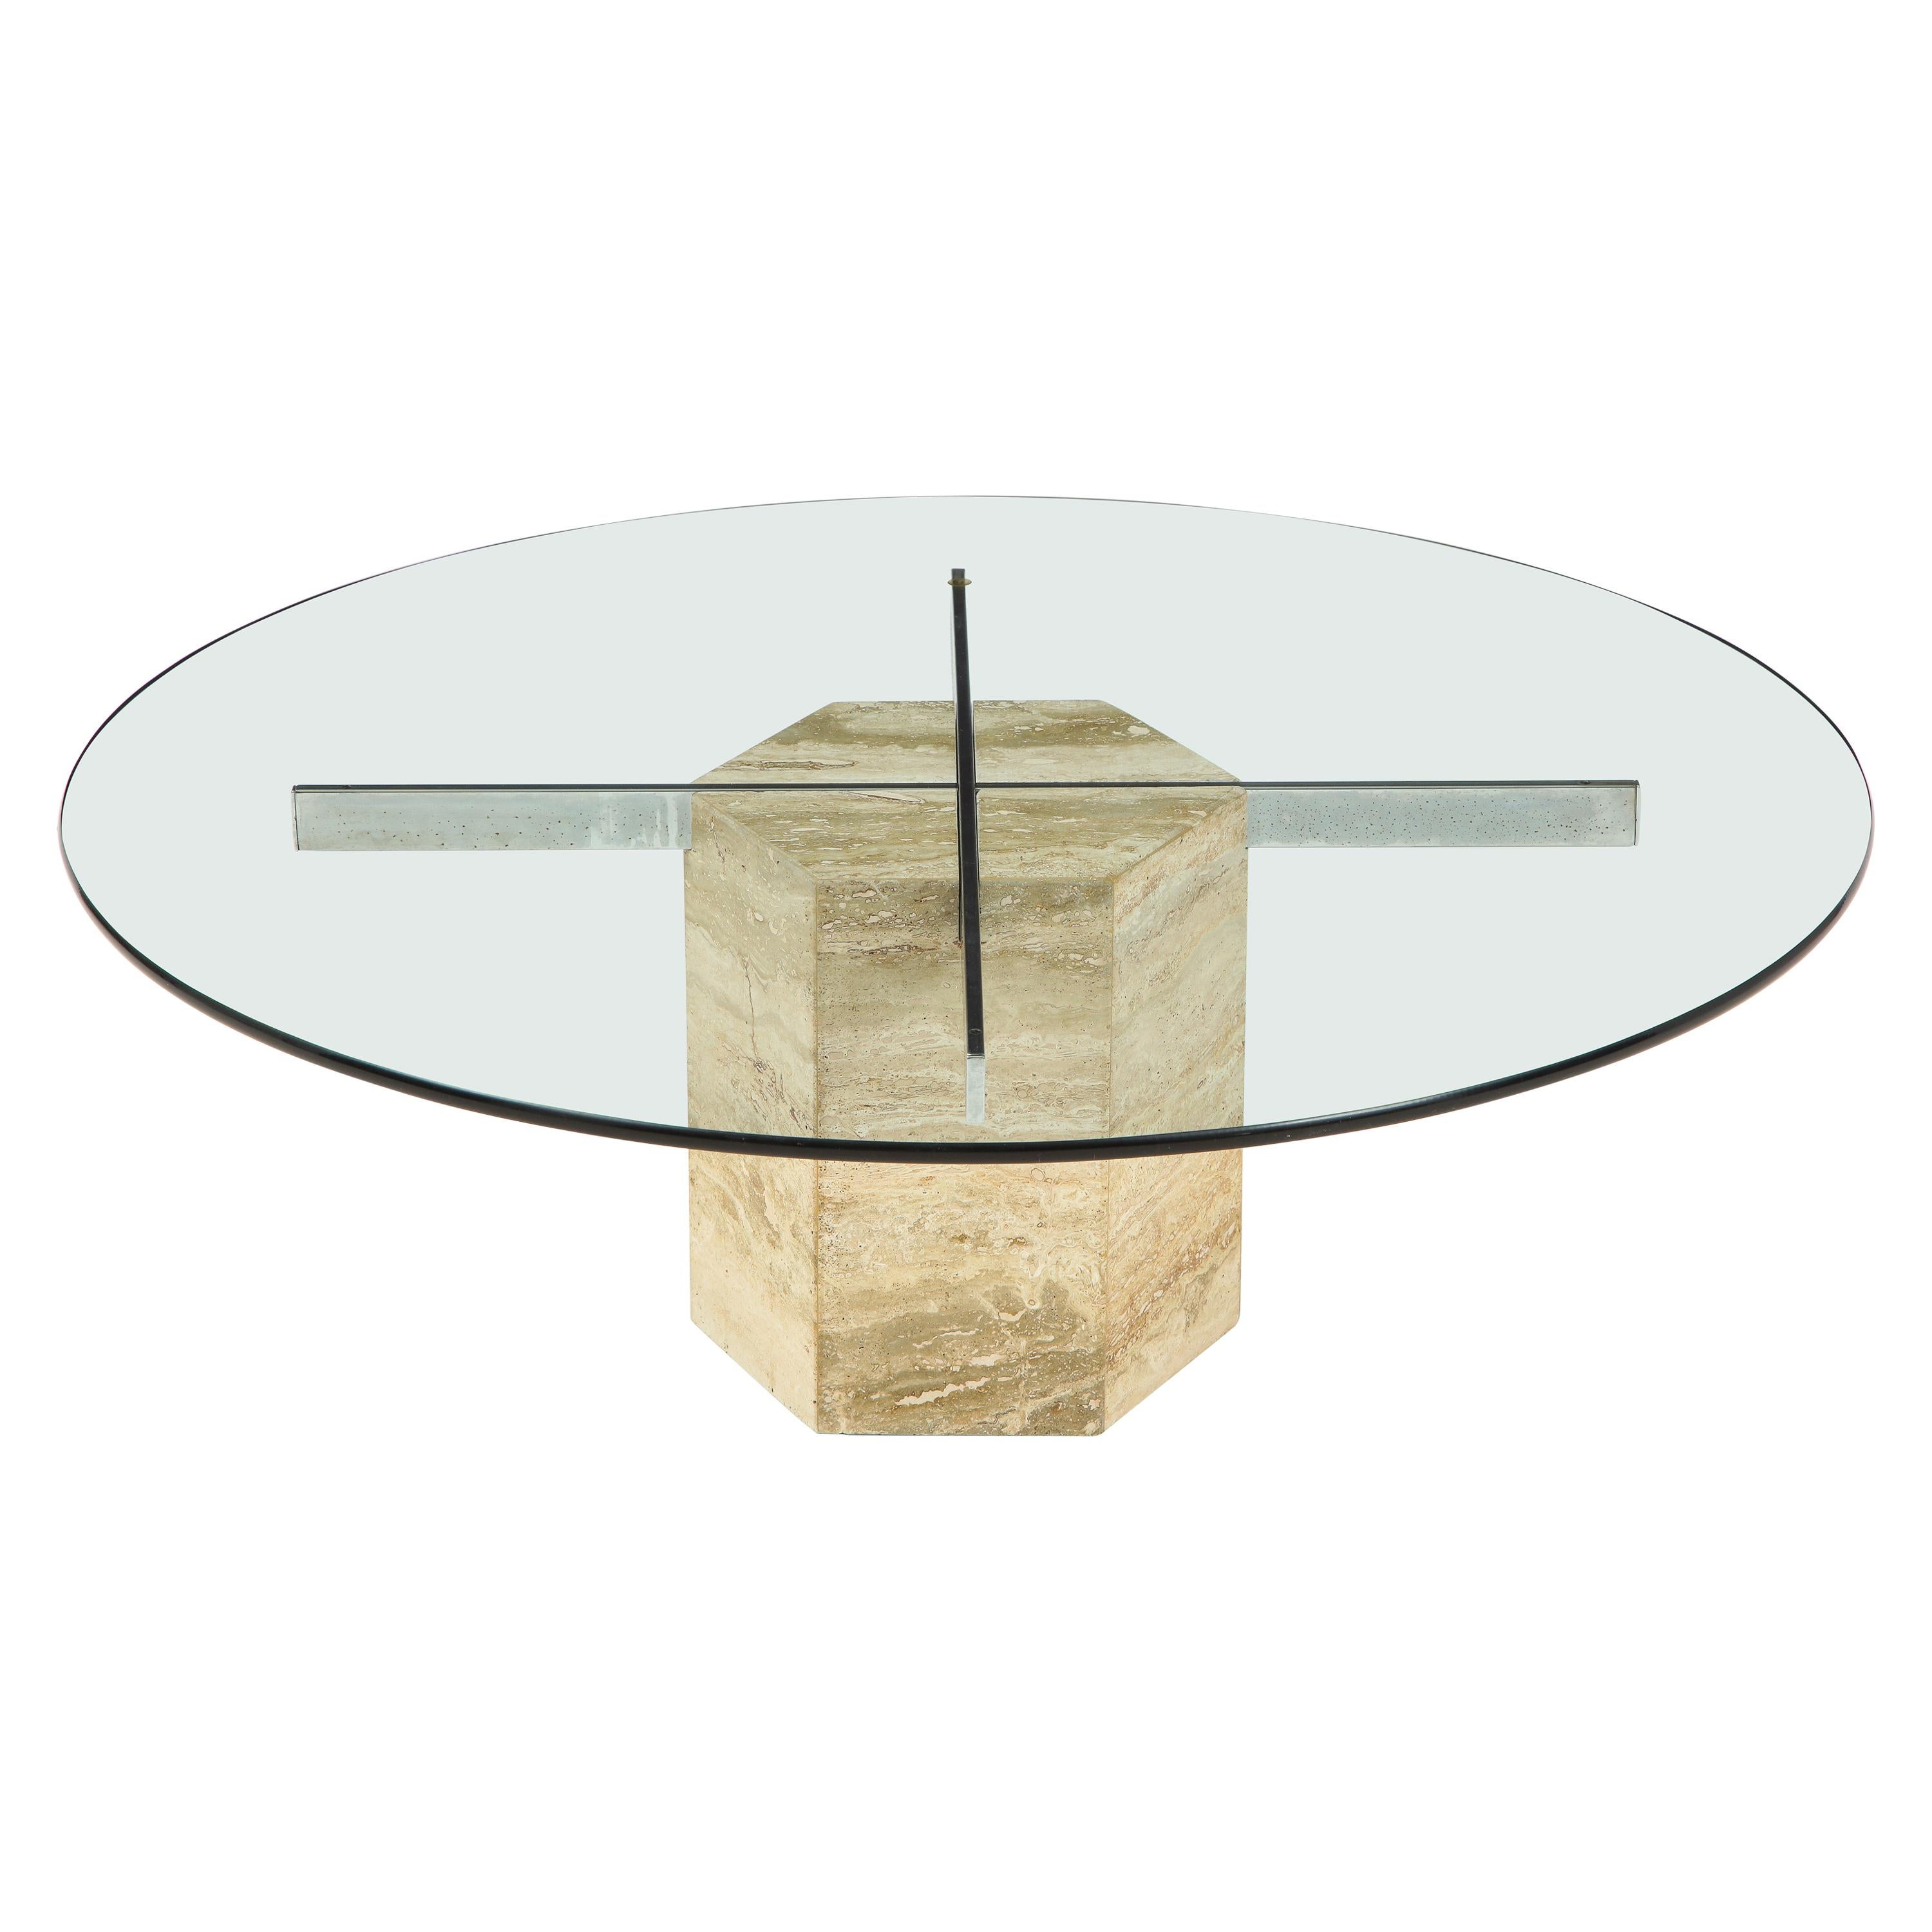 Italian Travertine and Glass Circular Coffee Table